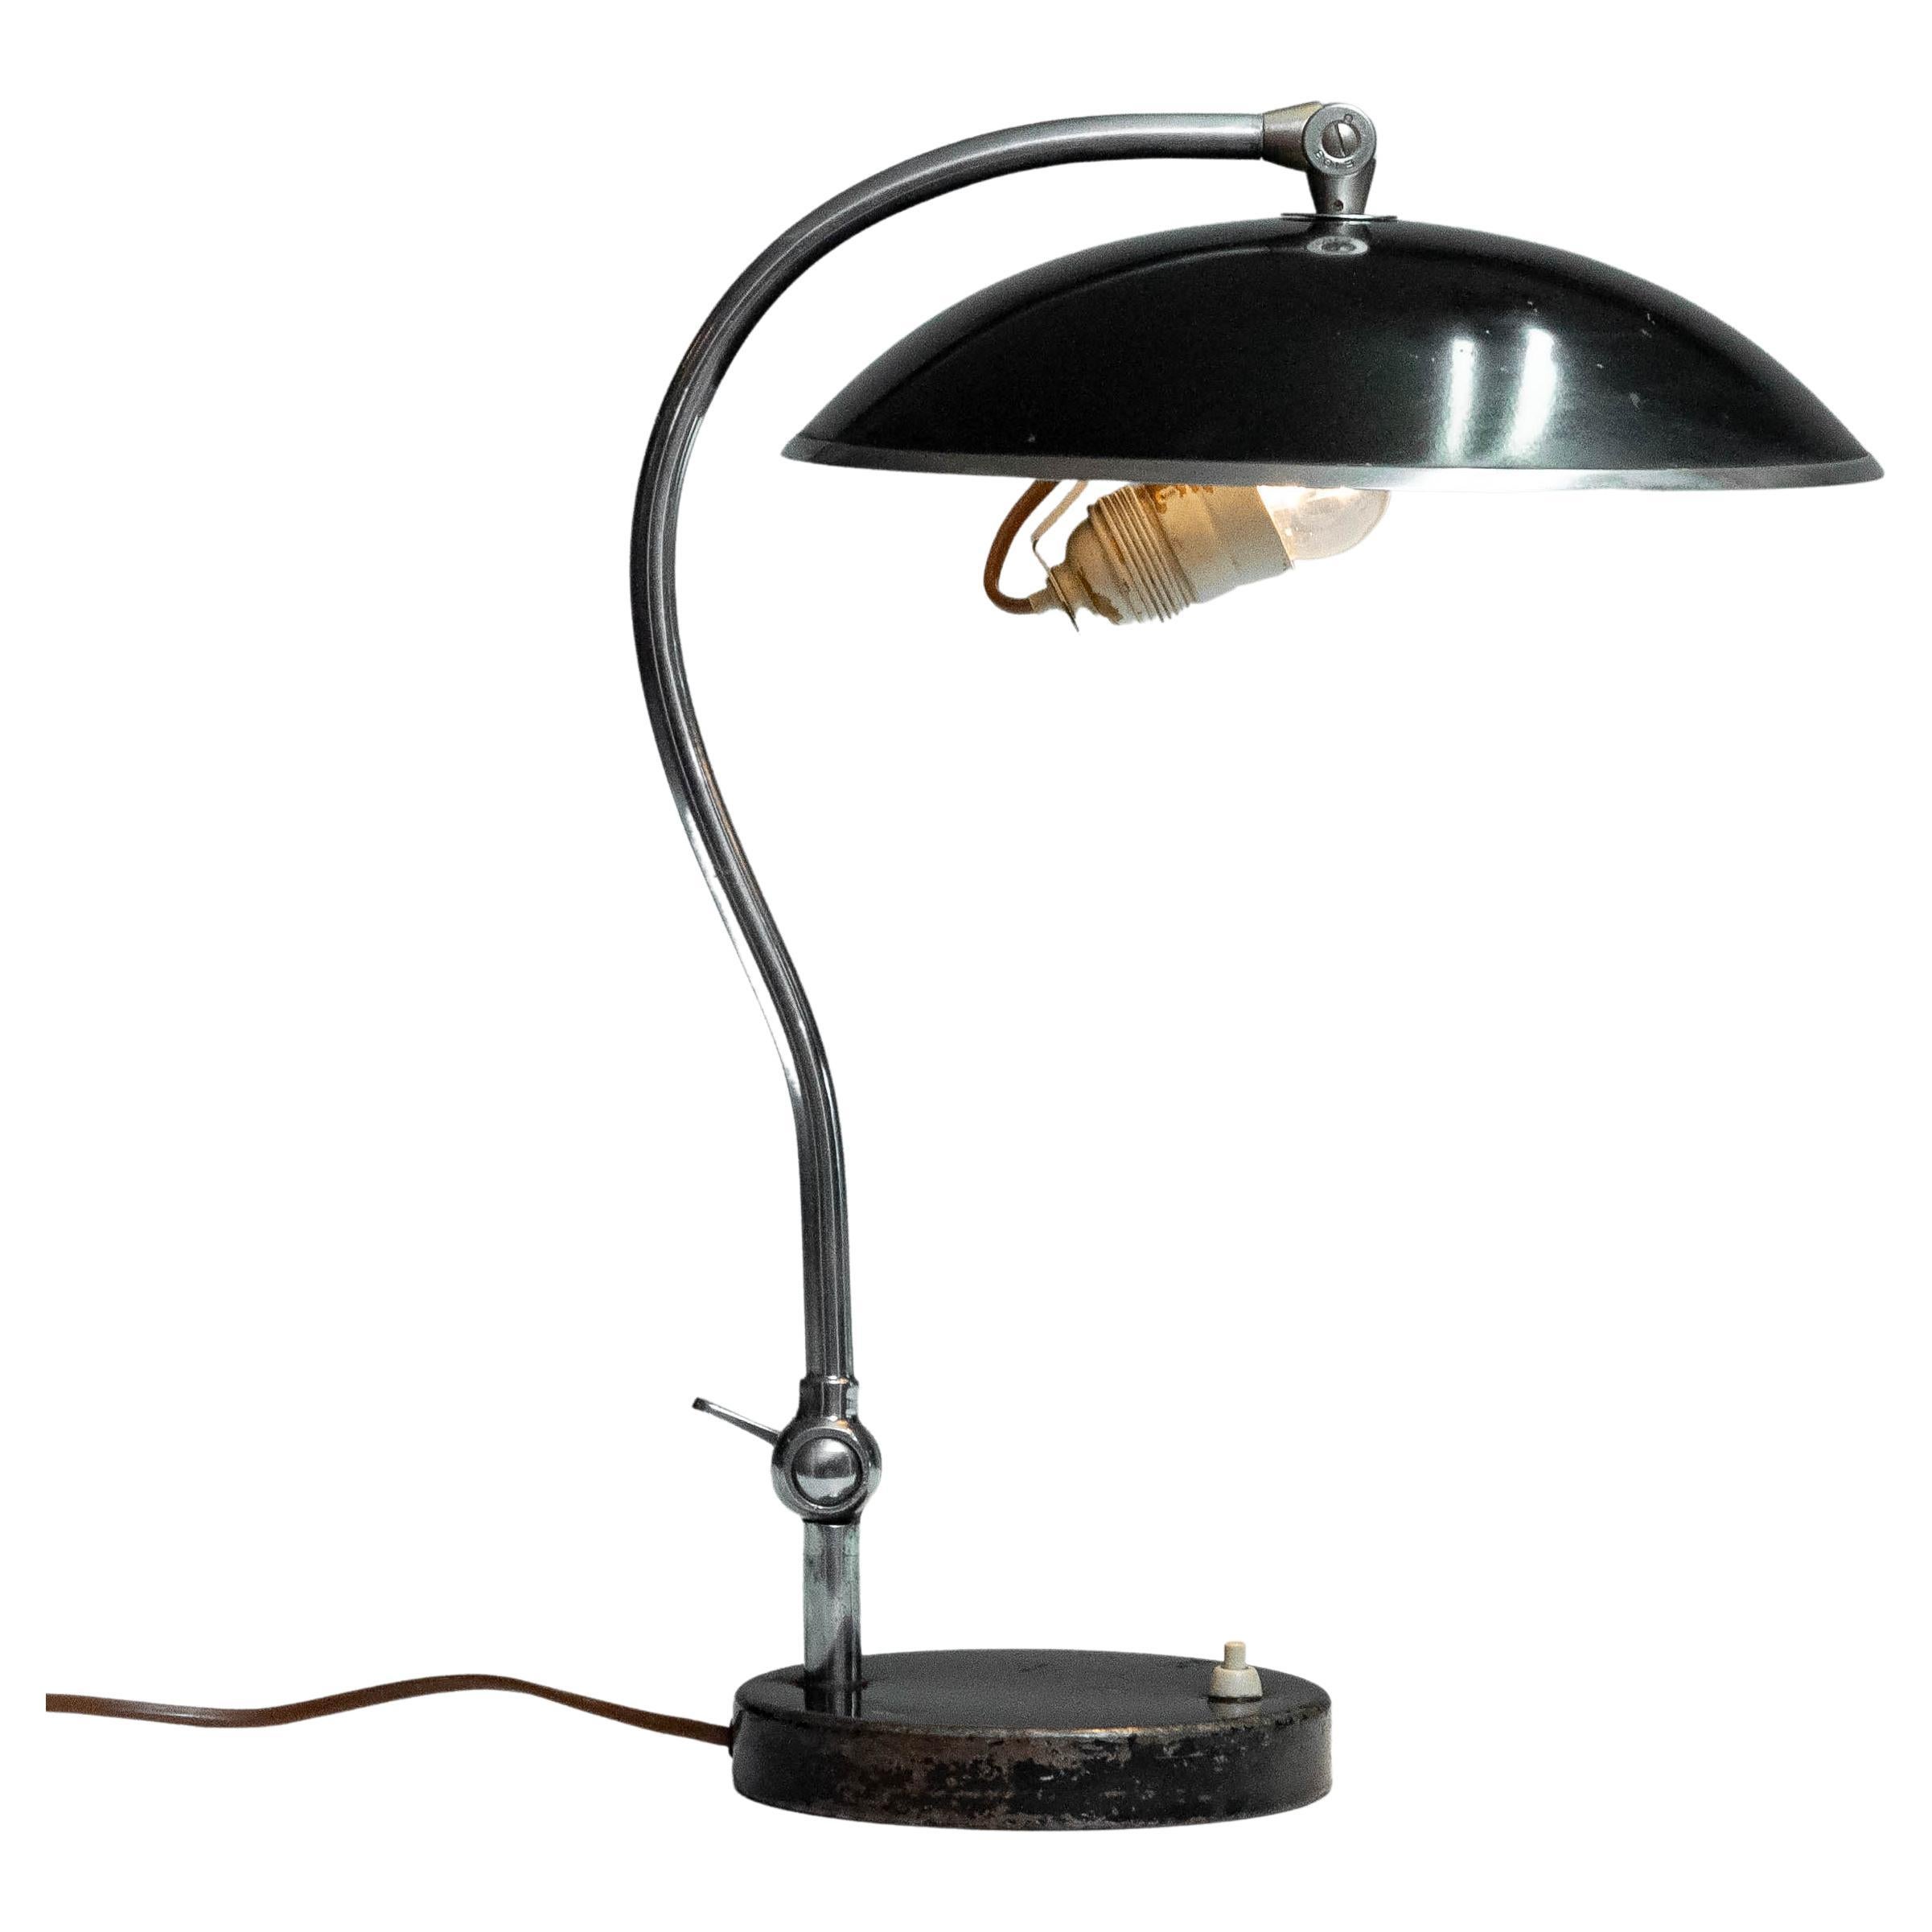 Schöne und originale schwarz lackierte Tischlampe, hergestellt in Schweden von Boréns Borås in den 1930er Jahren, Modellnummer 528. Dieses Modell diente als Inspiration für weitere Firmen, die sich von dieser Tischleuchte im Bauhaus-Stil inspirieren